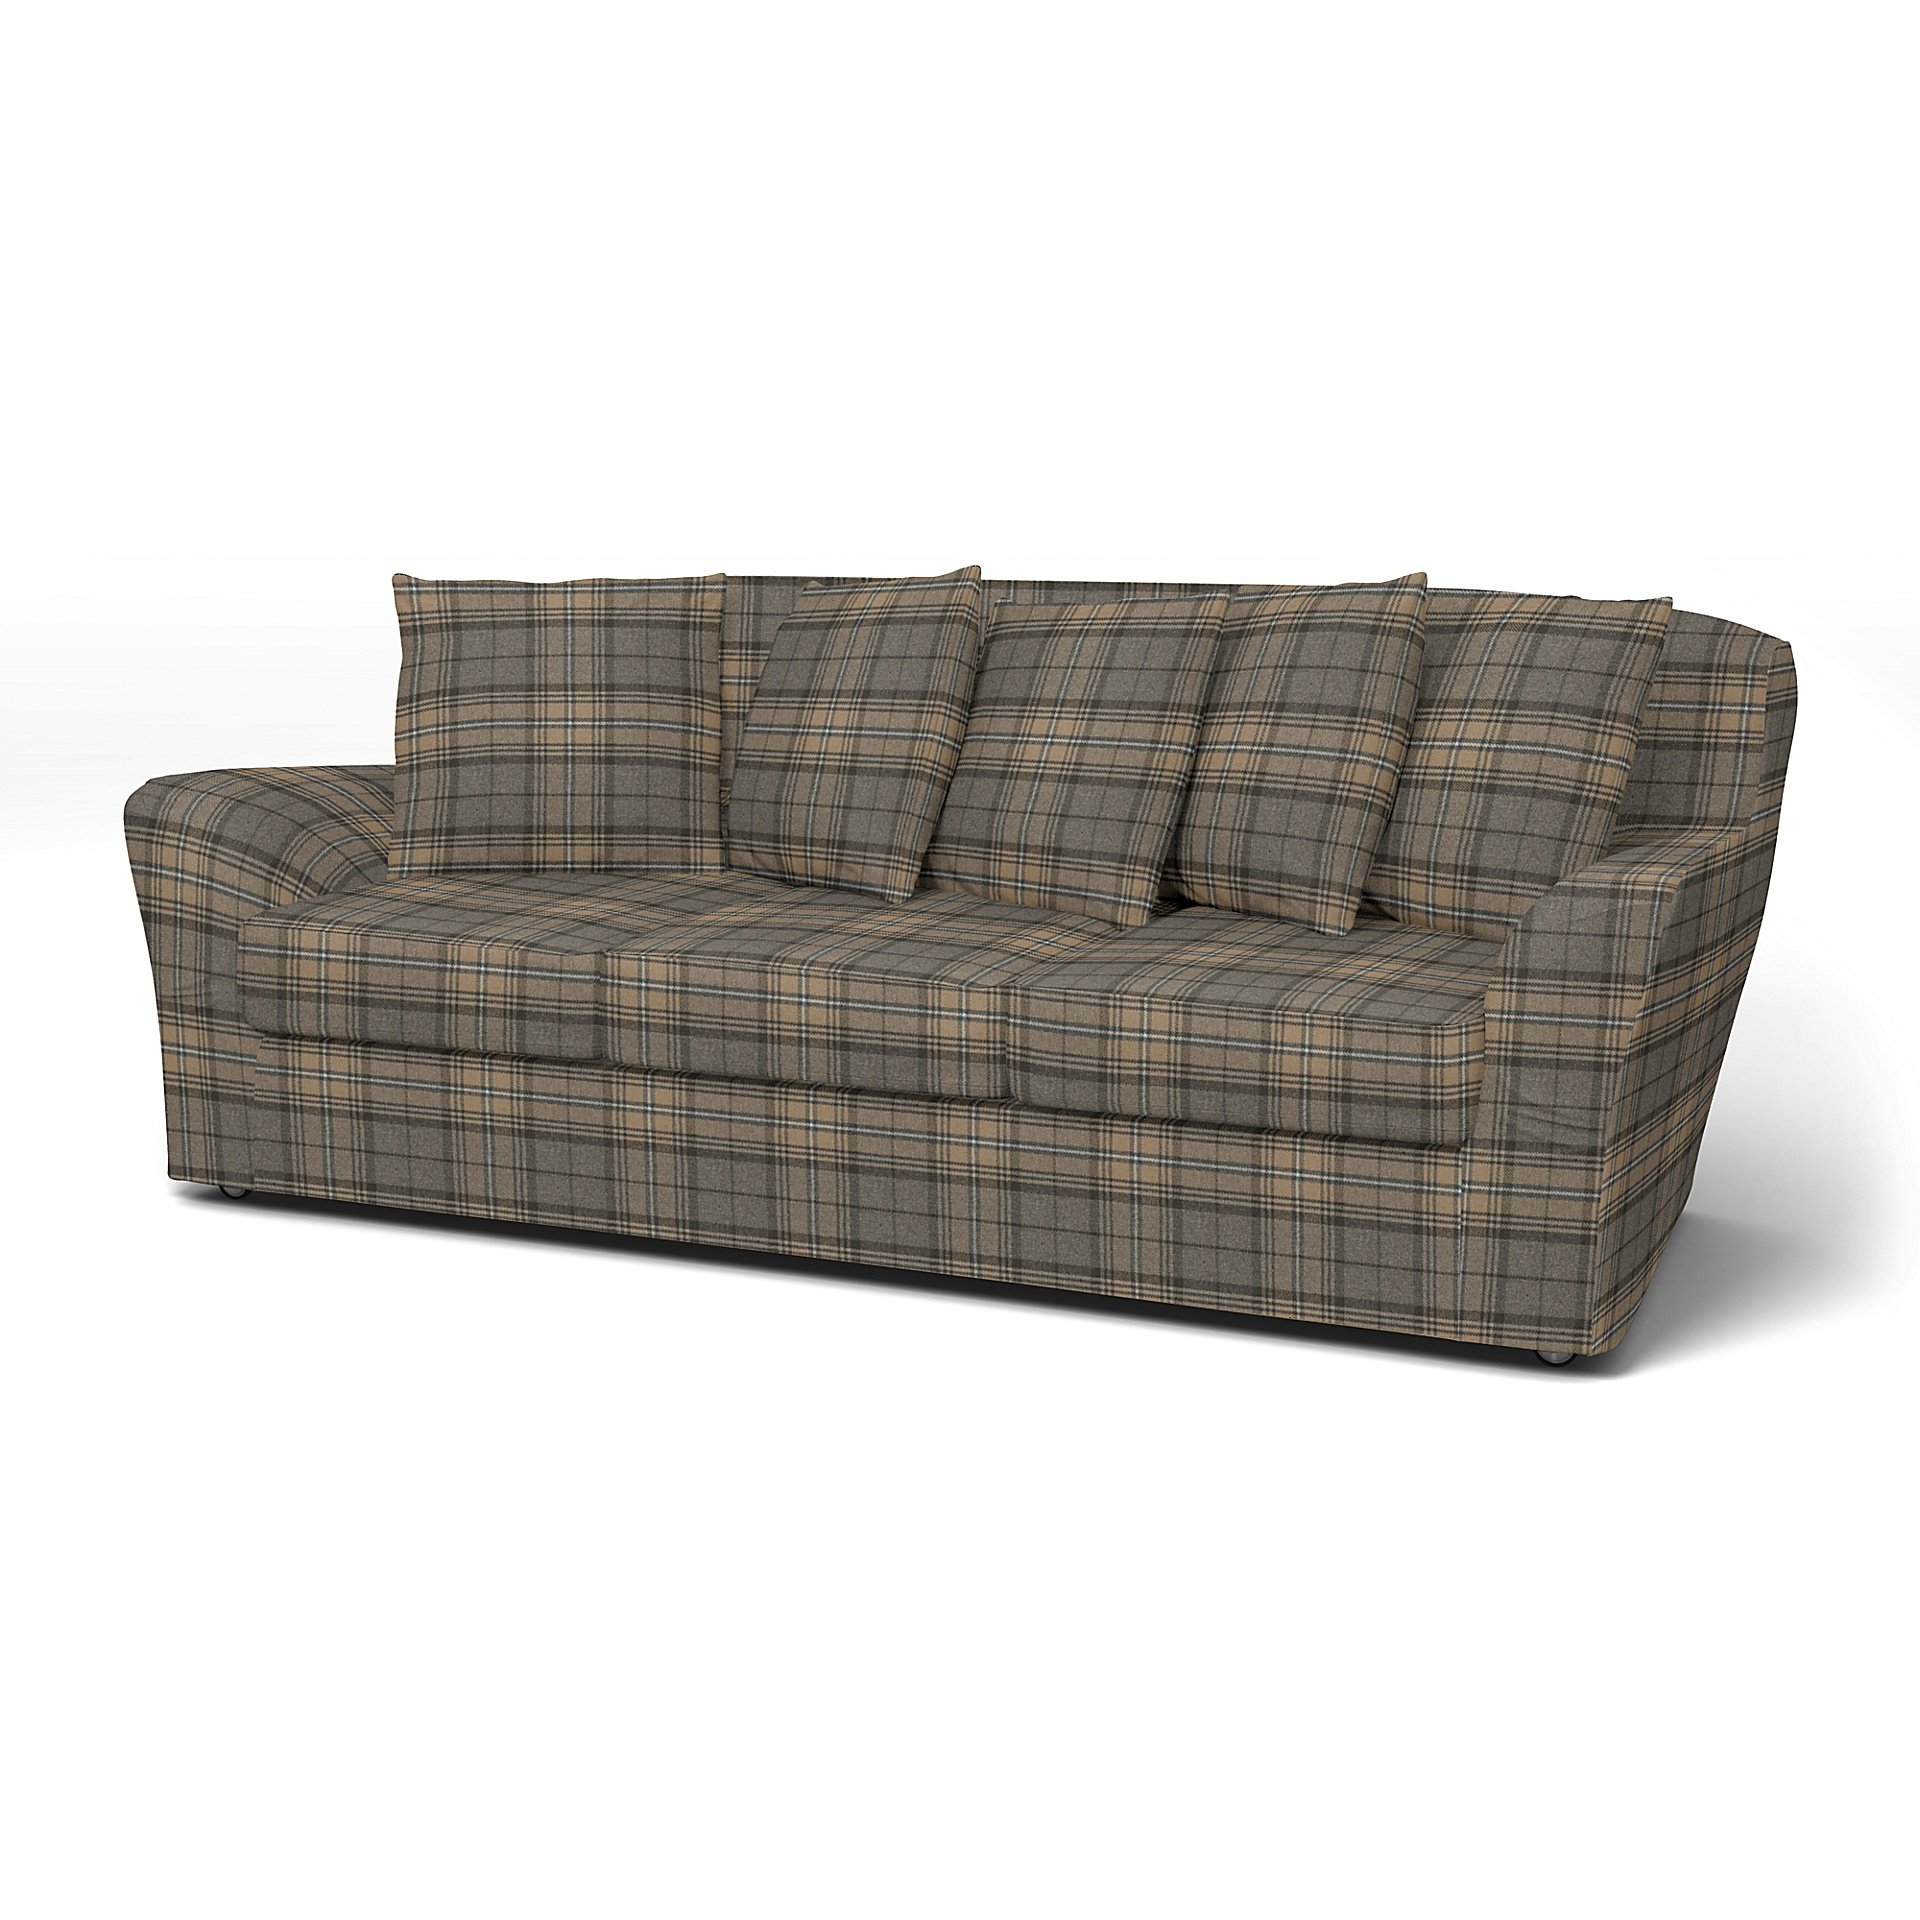 IKEA - Tomelilla 3 seater sofa, Bark Brown, Wool - Bemz